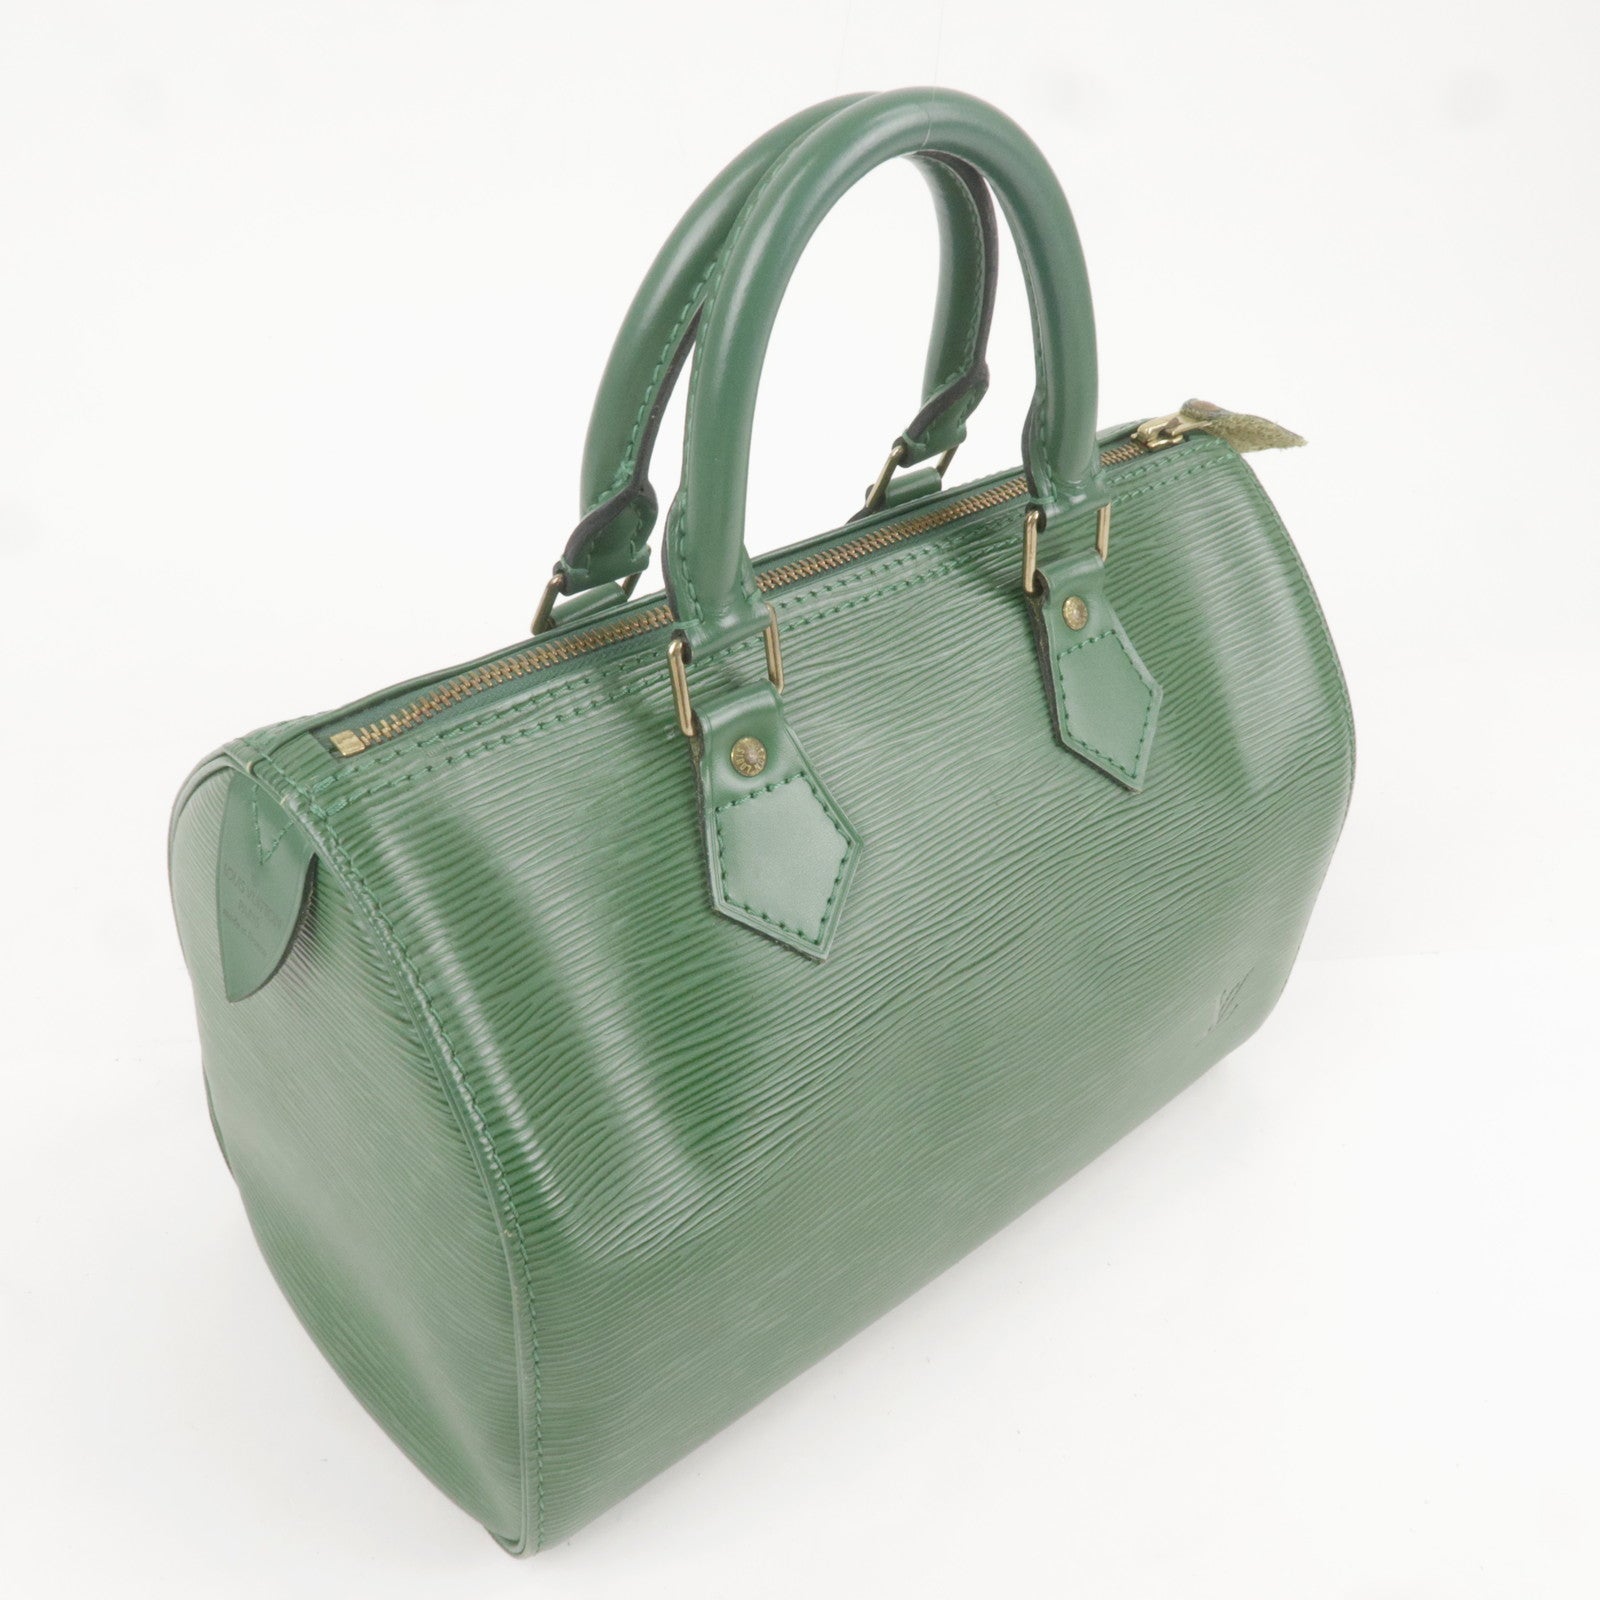 Louis Vuitton Epi Speedy 25 Hand Boston Bag Borneo Green M43014